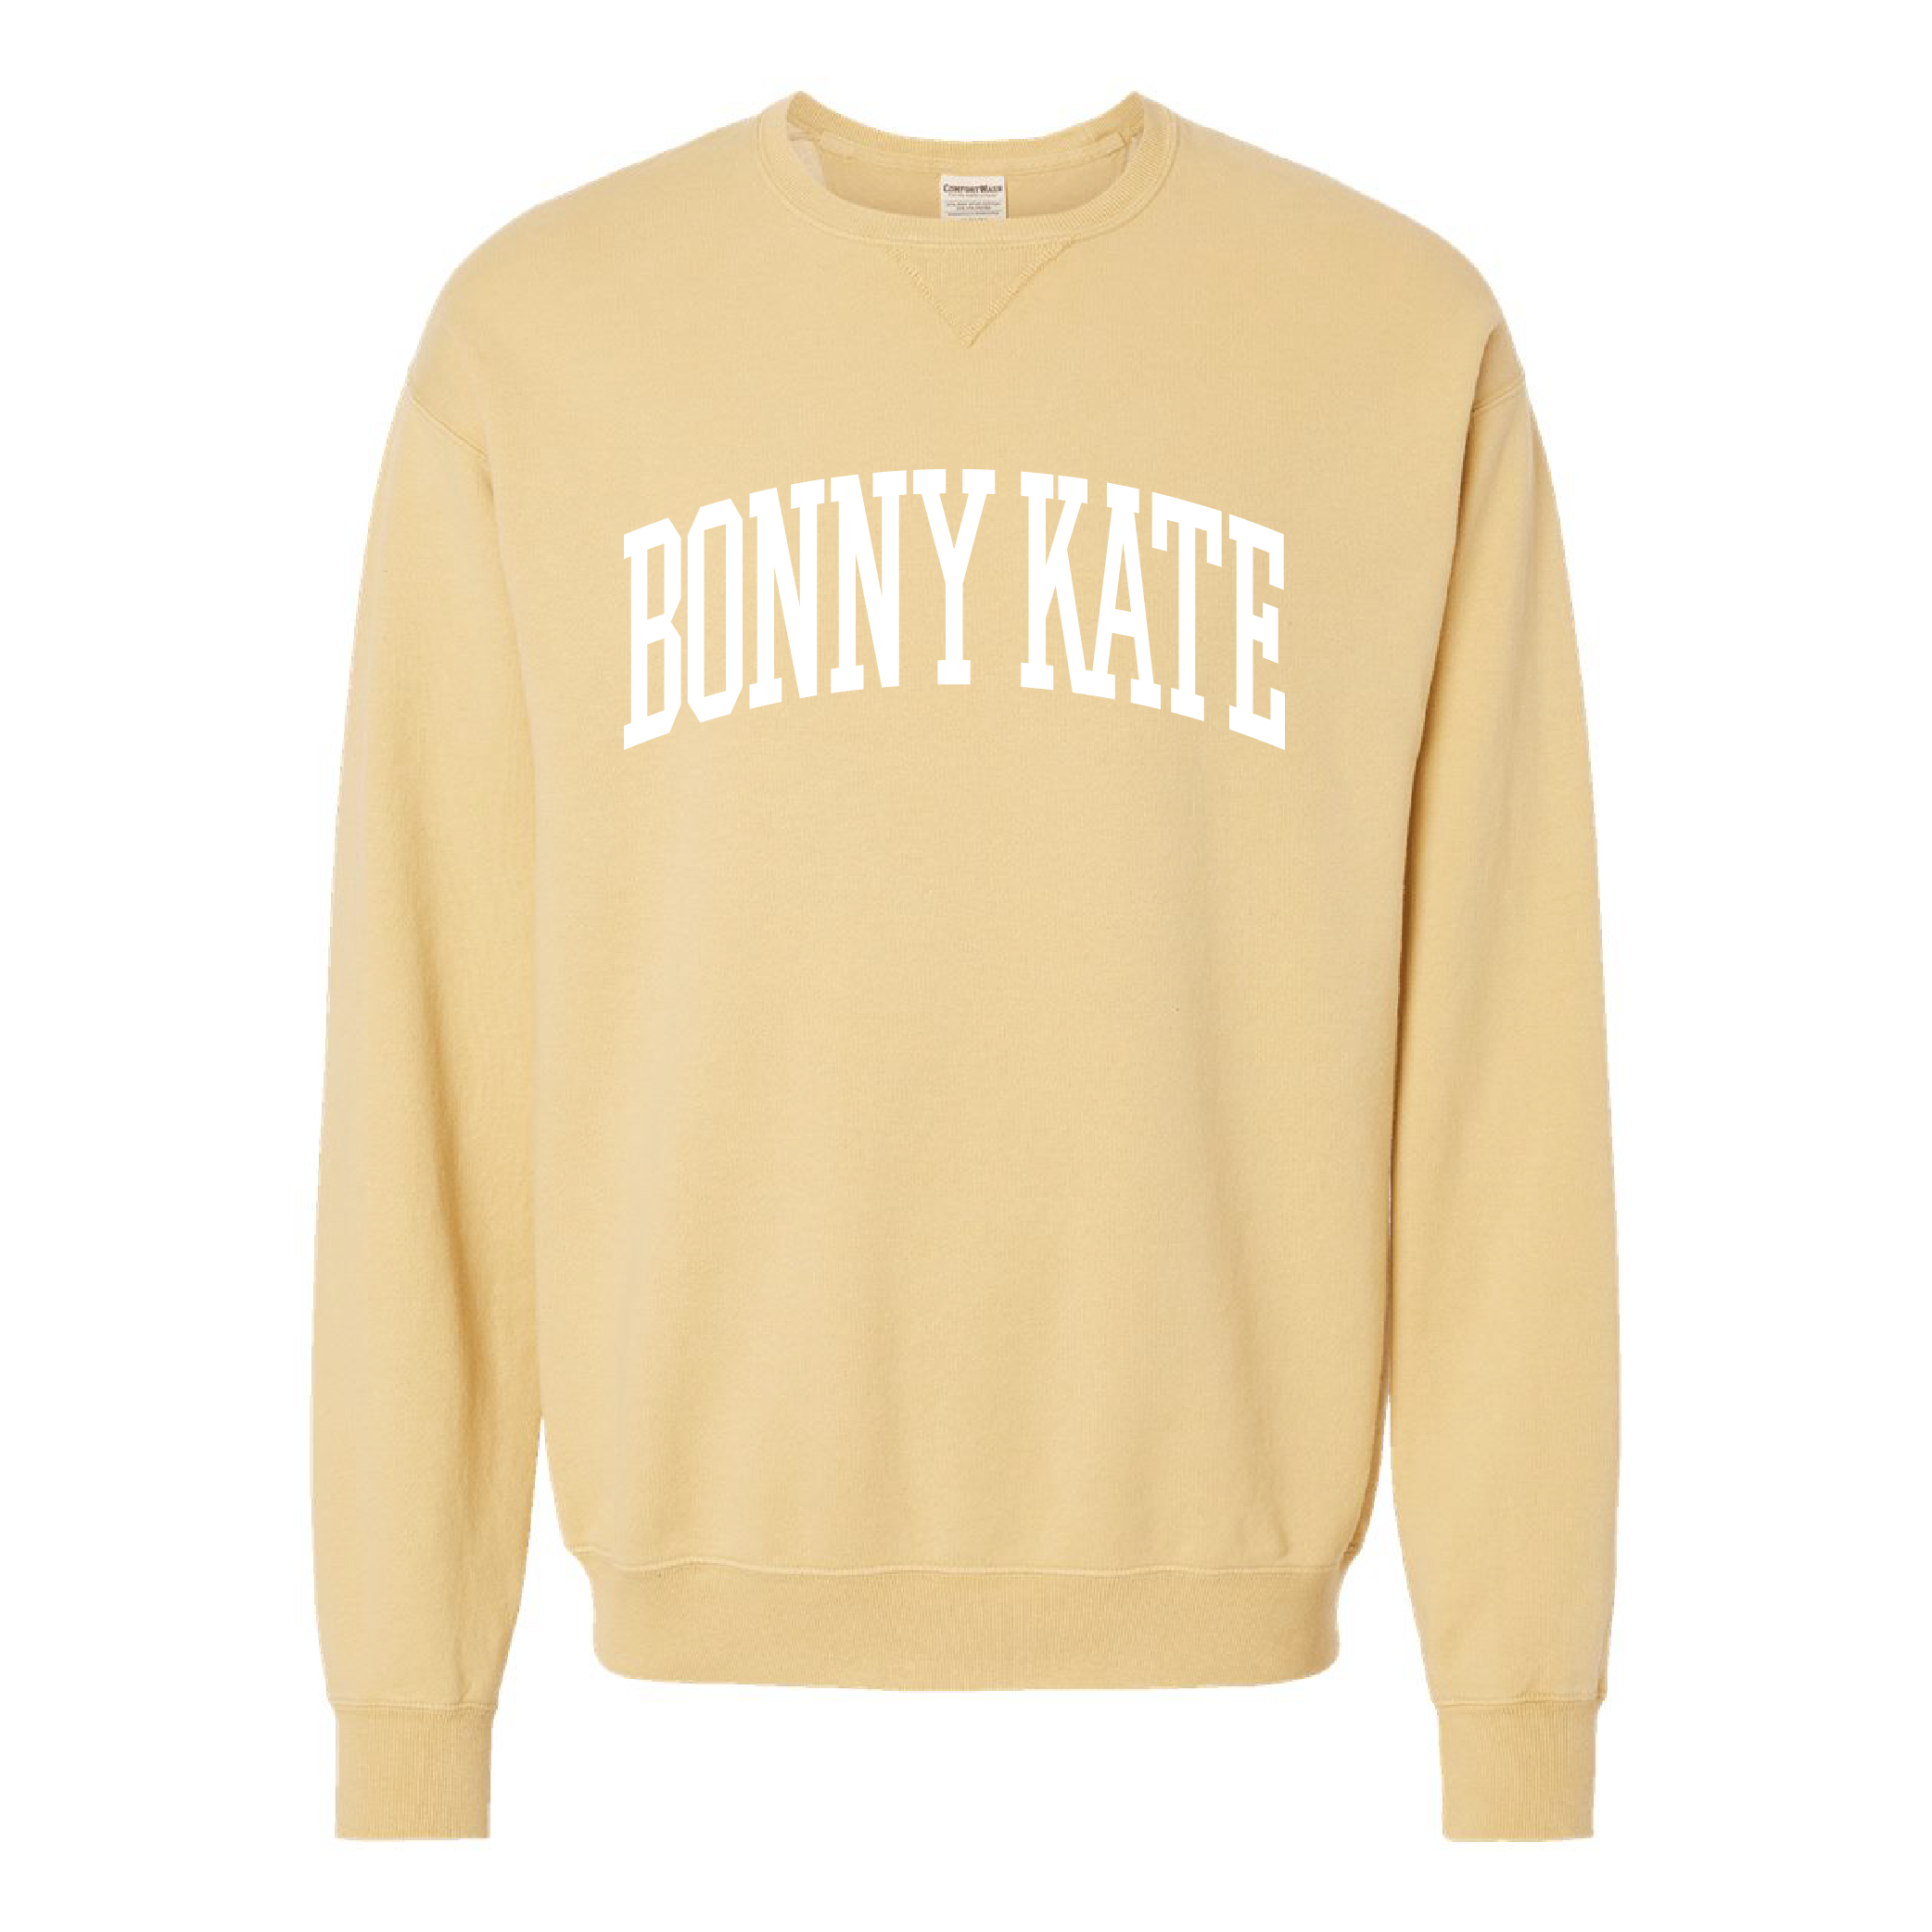 Bonny Kate Garment-Dyed Crewneck Sweatshirt